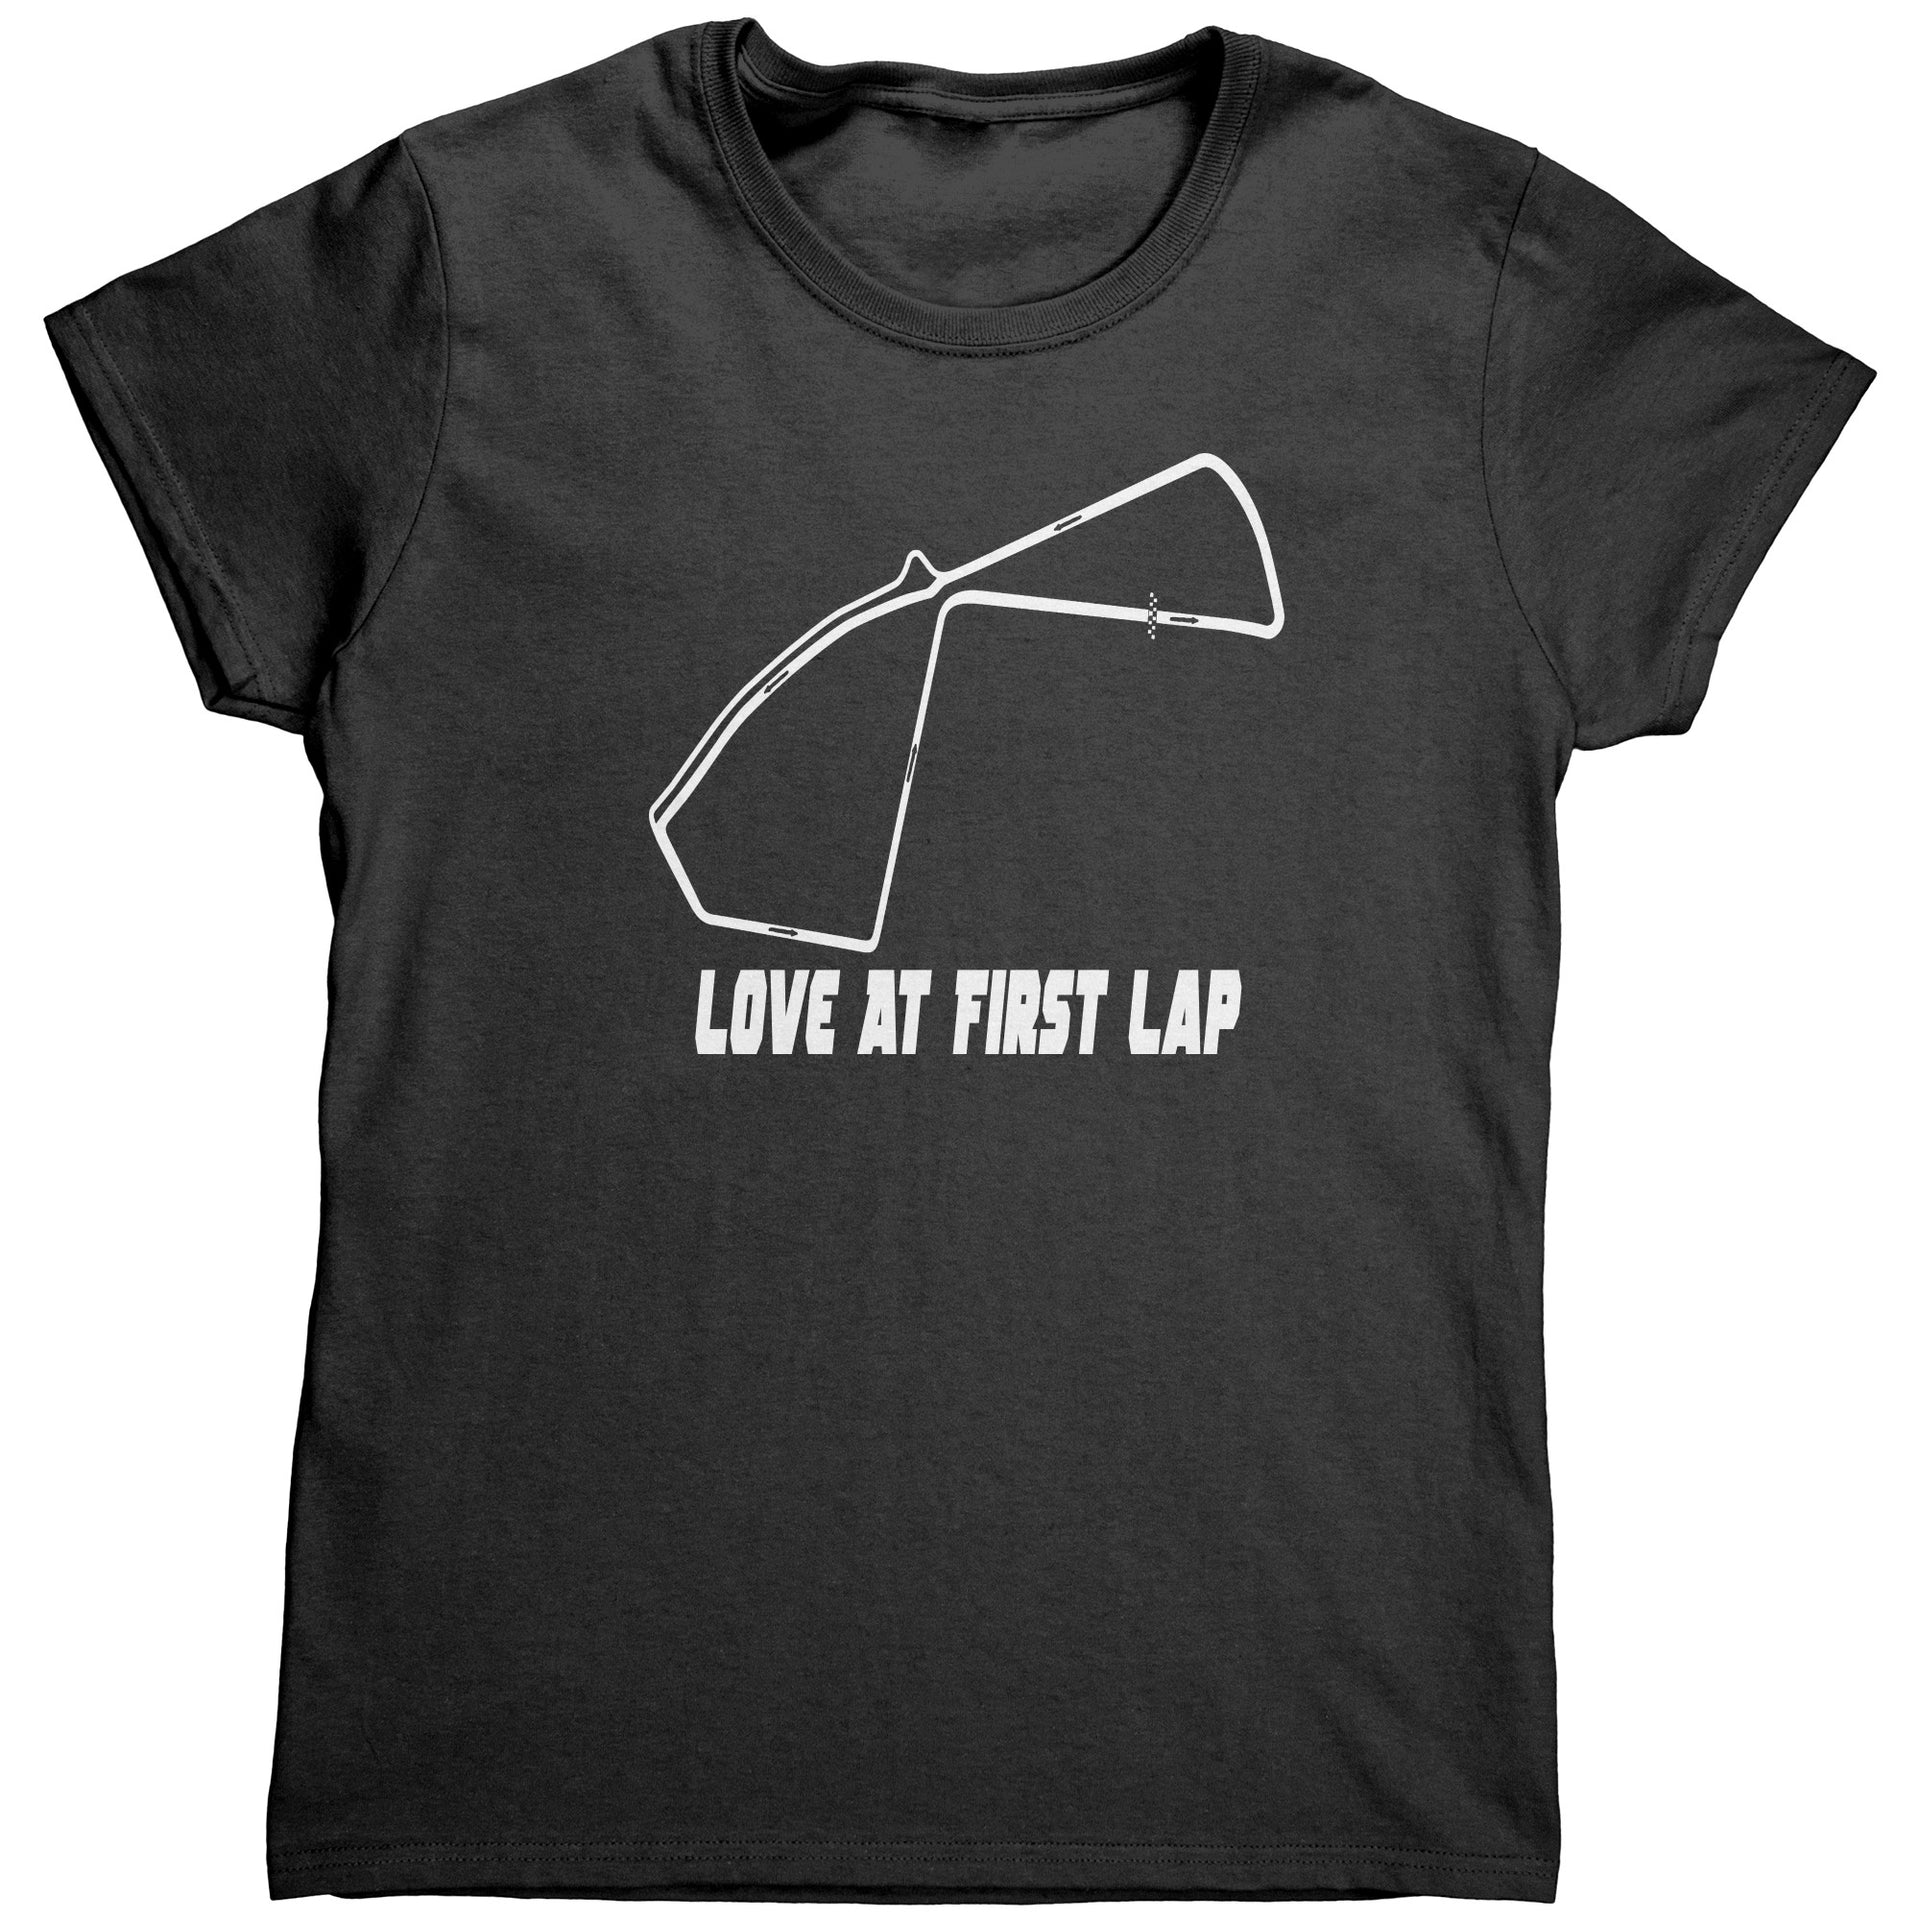 Racing raceway t-shirts